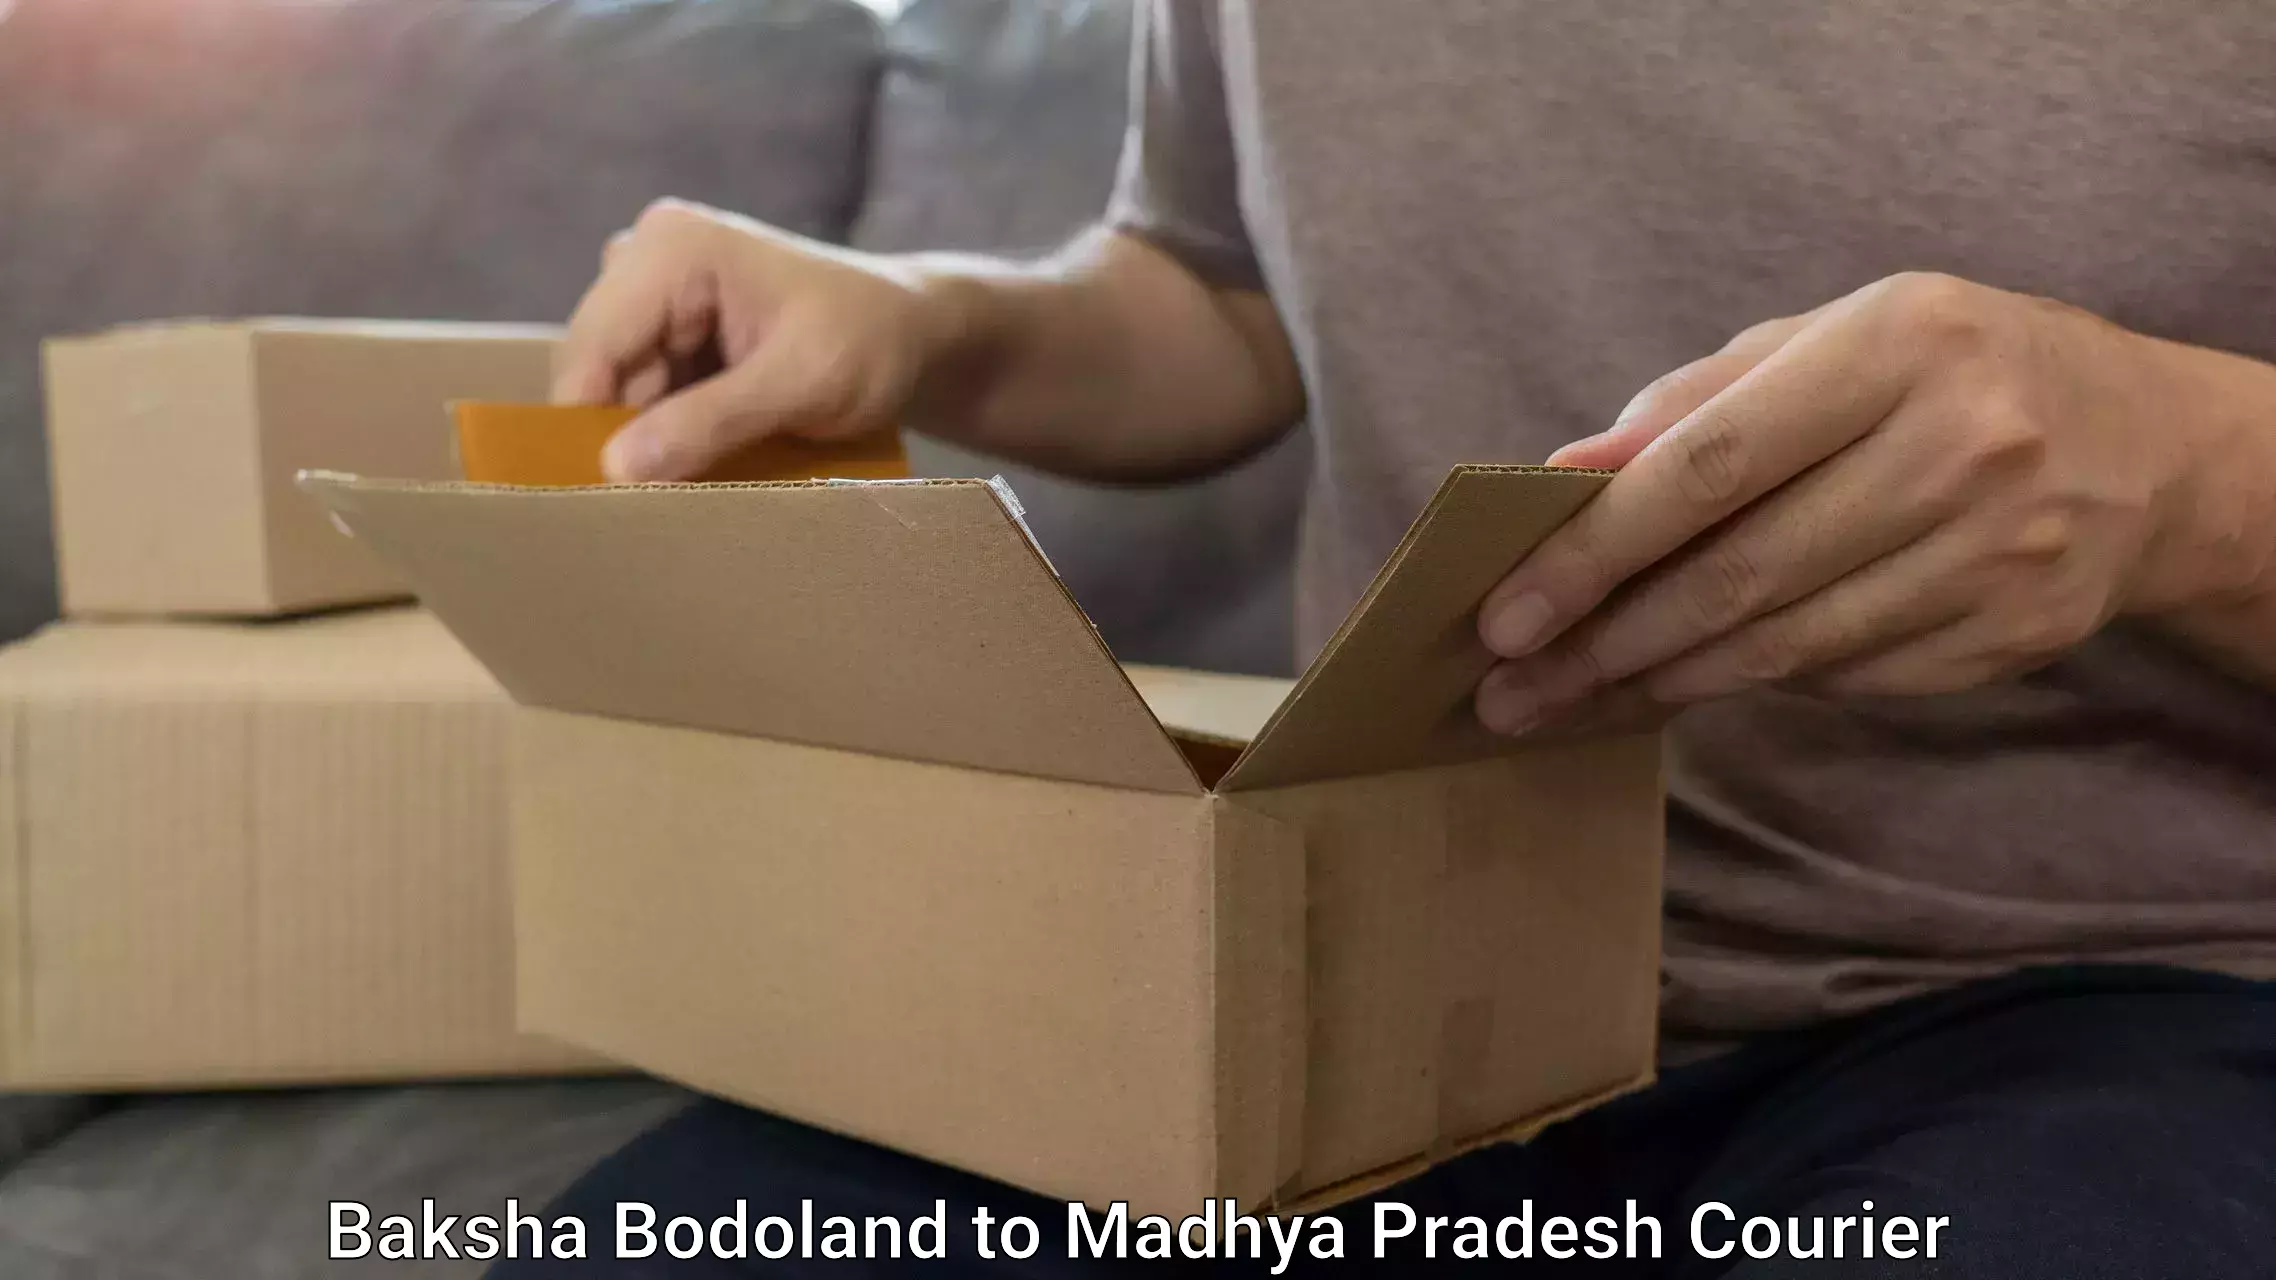 Luggage shipment specialists Baksha Bodoland to Madhya Pradesh